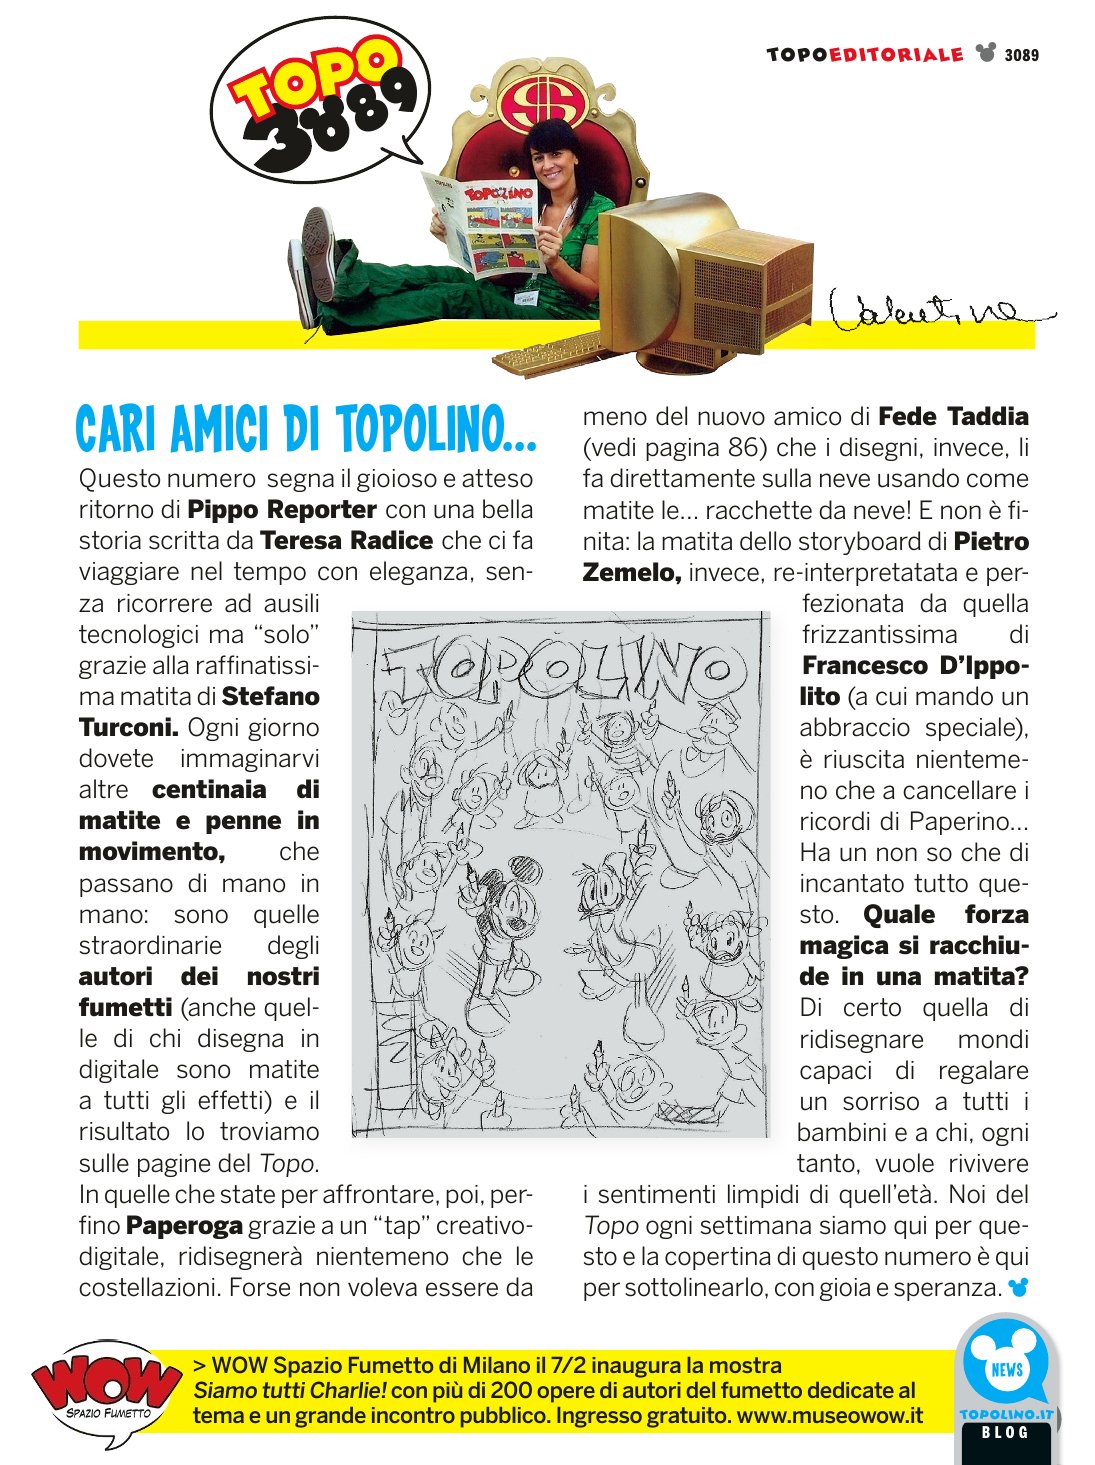 L'editoriale del numero 3089 di Valentina De Poli (via: http://topoinfo.altervista.org/)